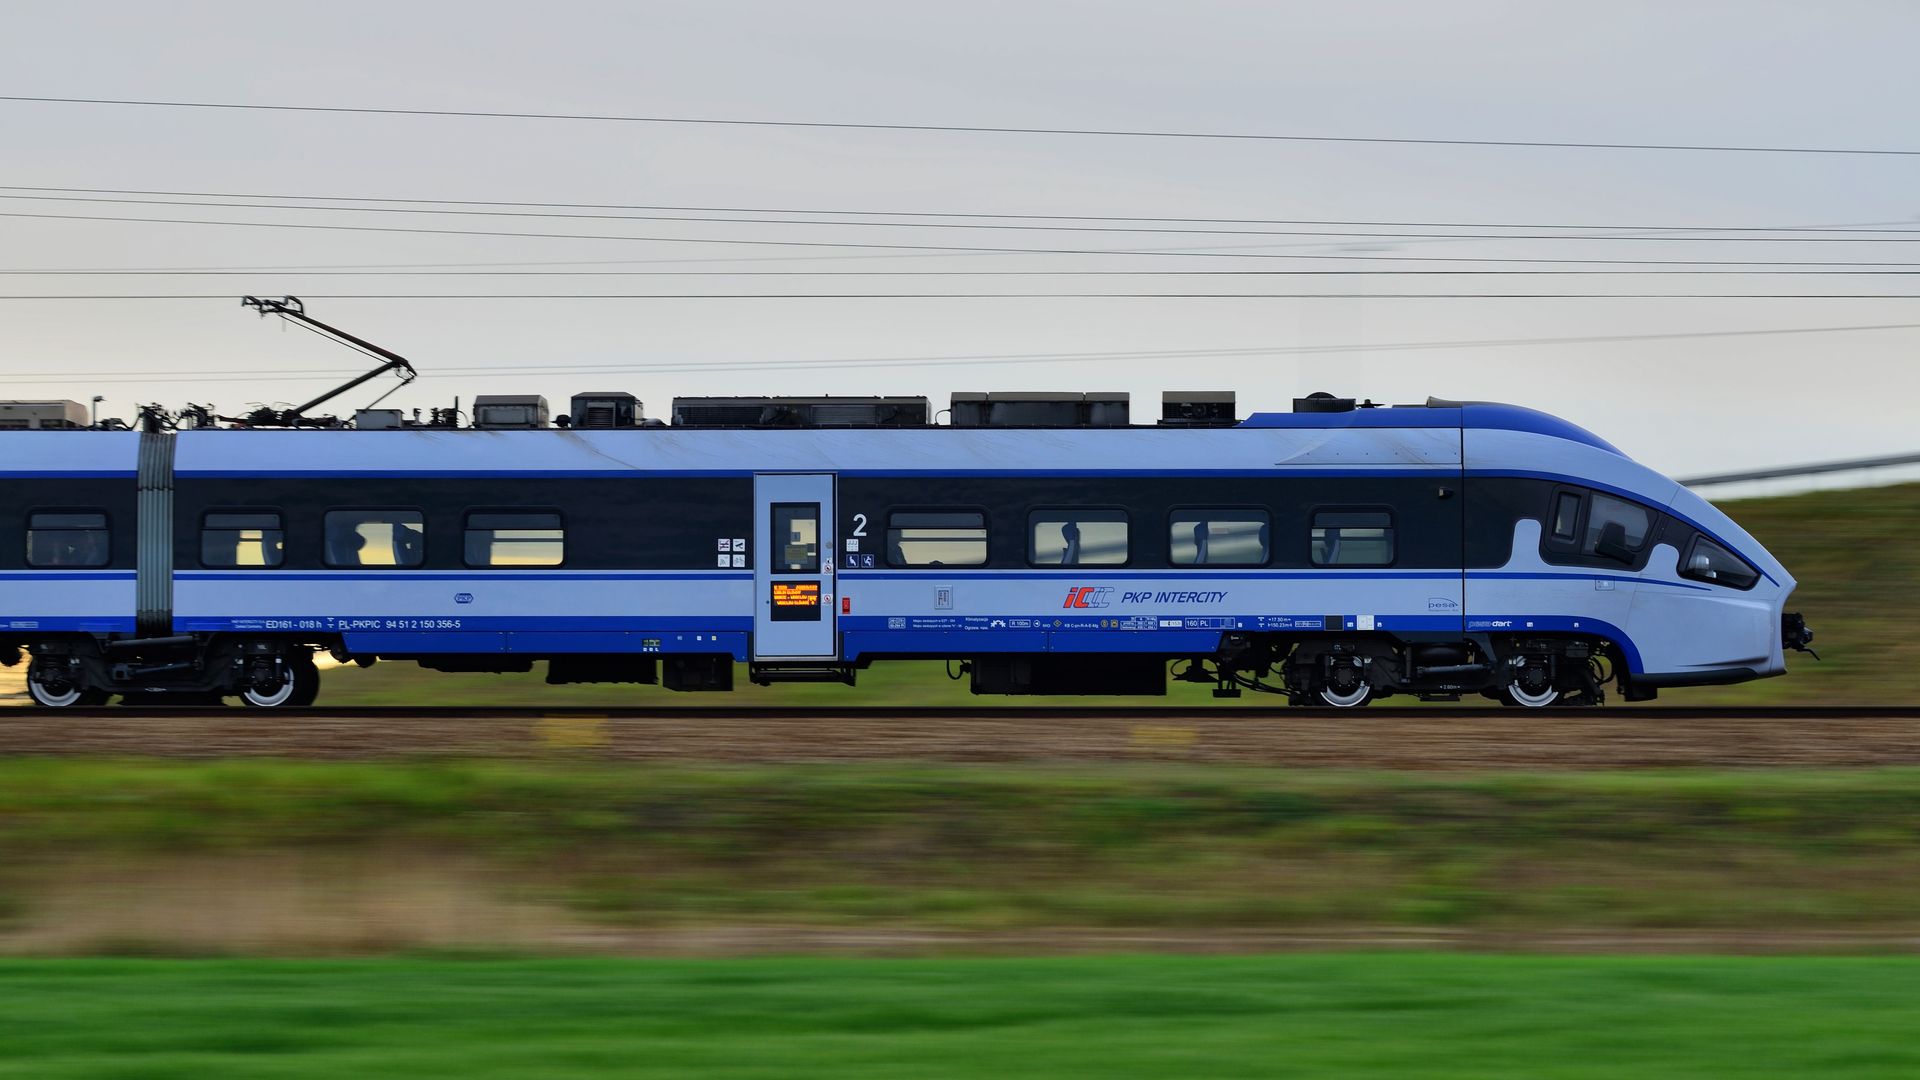 O 15 miał być we Wrocławiu, a nadal stał w Niemczech. Będzie pociąg-rekordzista?